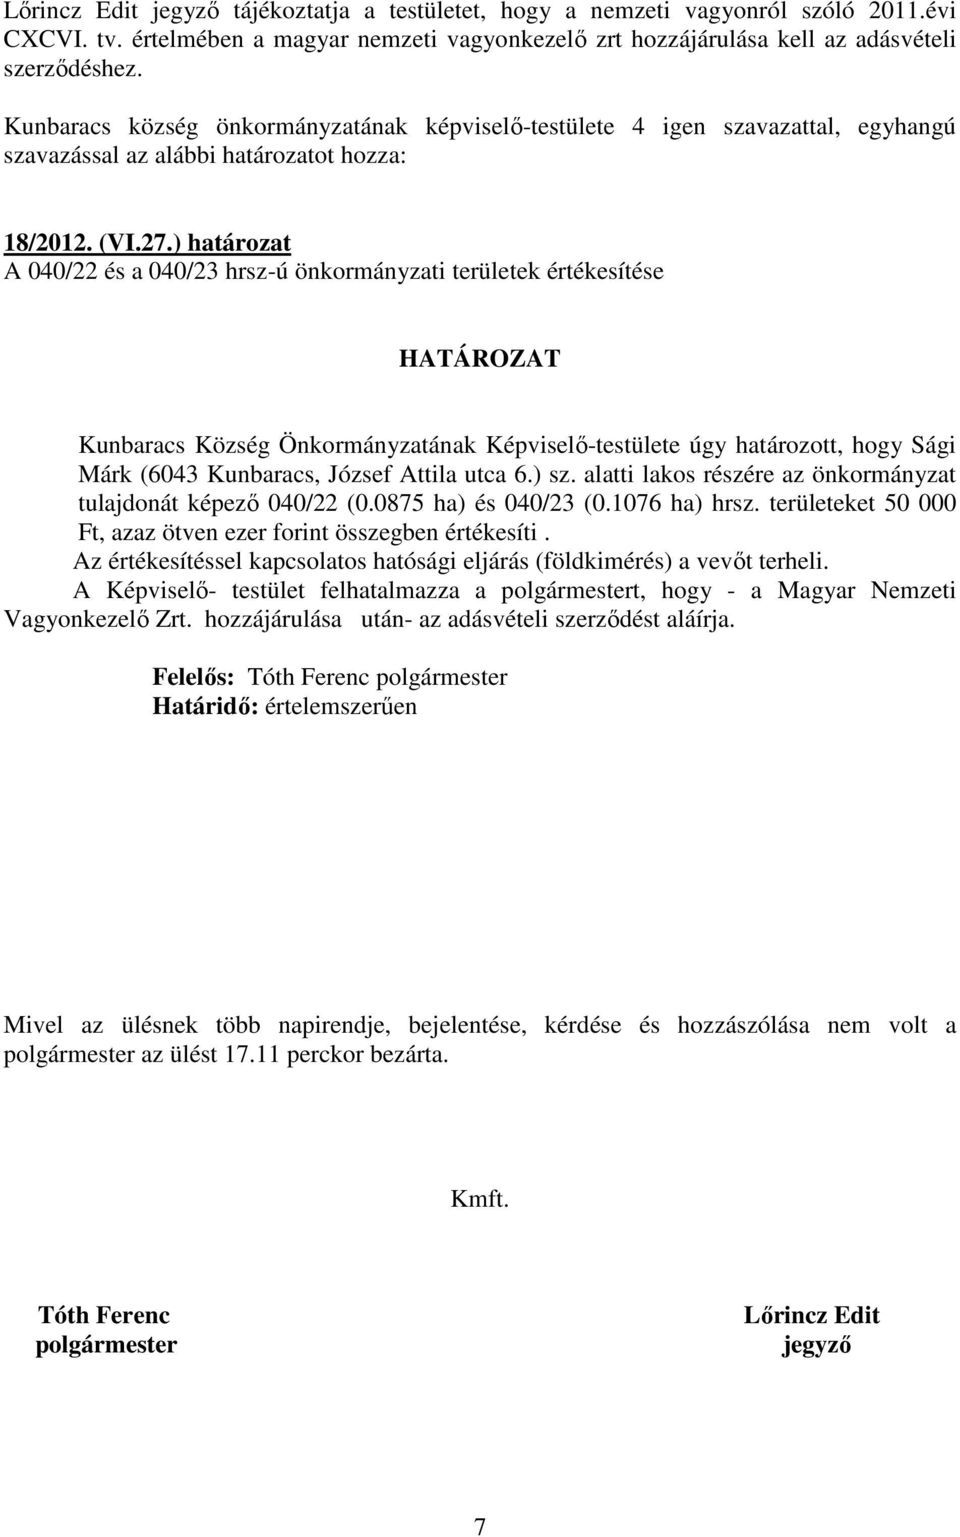 ) határozat A 040/22 és a 040/23 hrsz-ú önkormányzati területek értékesítése Kunbaracs Község Önkormányzatának Képviselı-testülete úgy határozott, hogy Sági Márk (6043 Kunbaracs, József Attila utca 6.